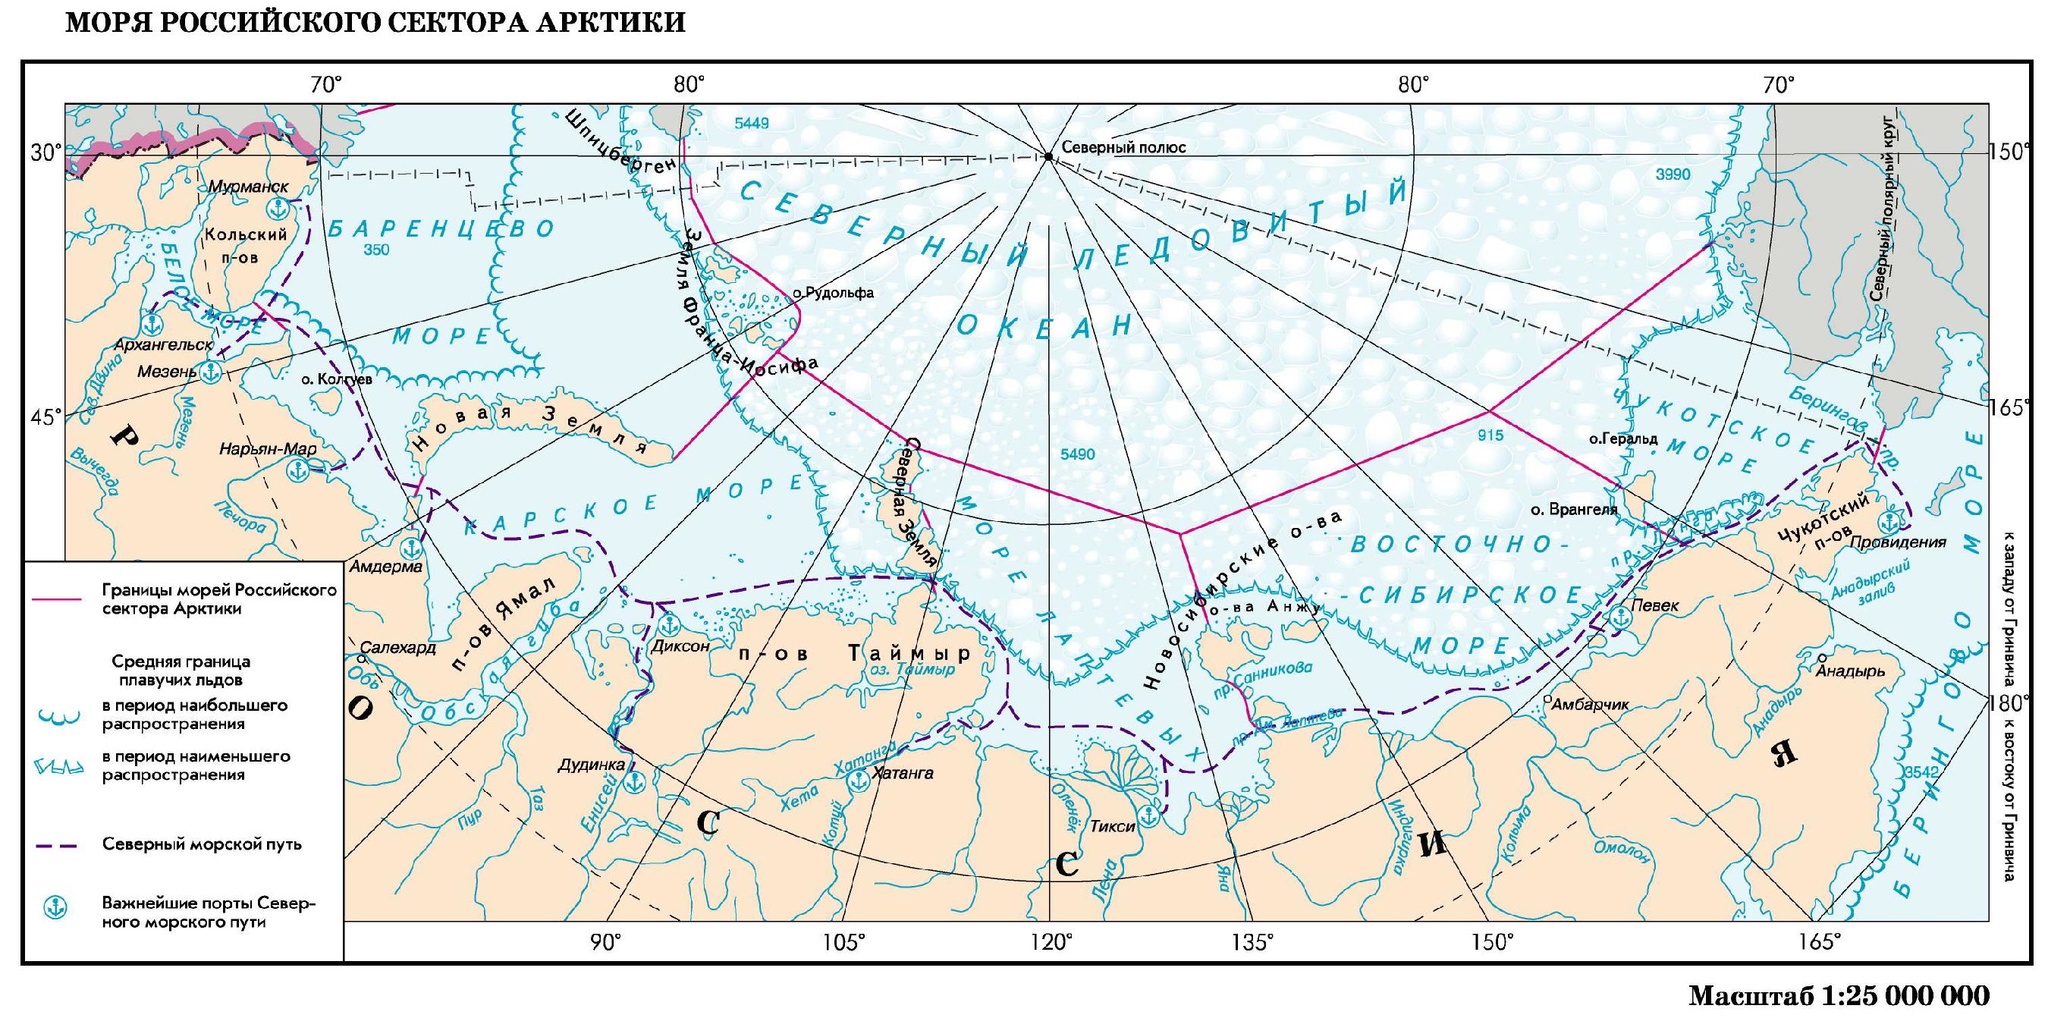 Северный морской путь на карте границы РФ. Арктика Северный морской путь на карте. Граница российского сектора Арктики. Морская граница России в Северном Ледовитом океане на карте. Бассейн океана баренцево